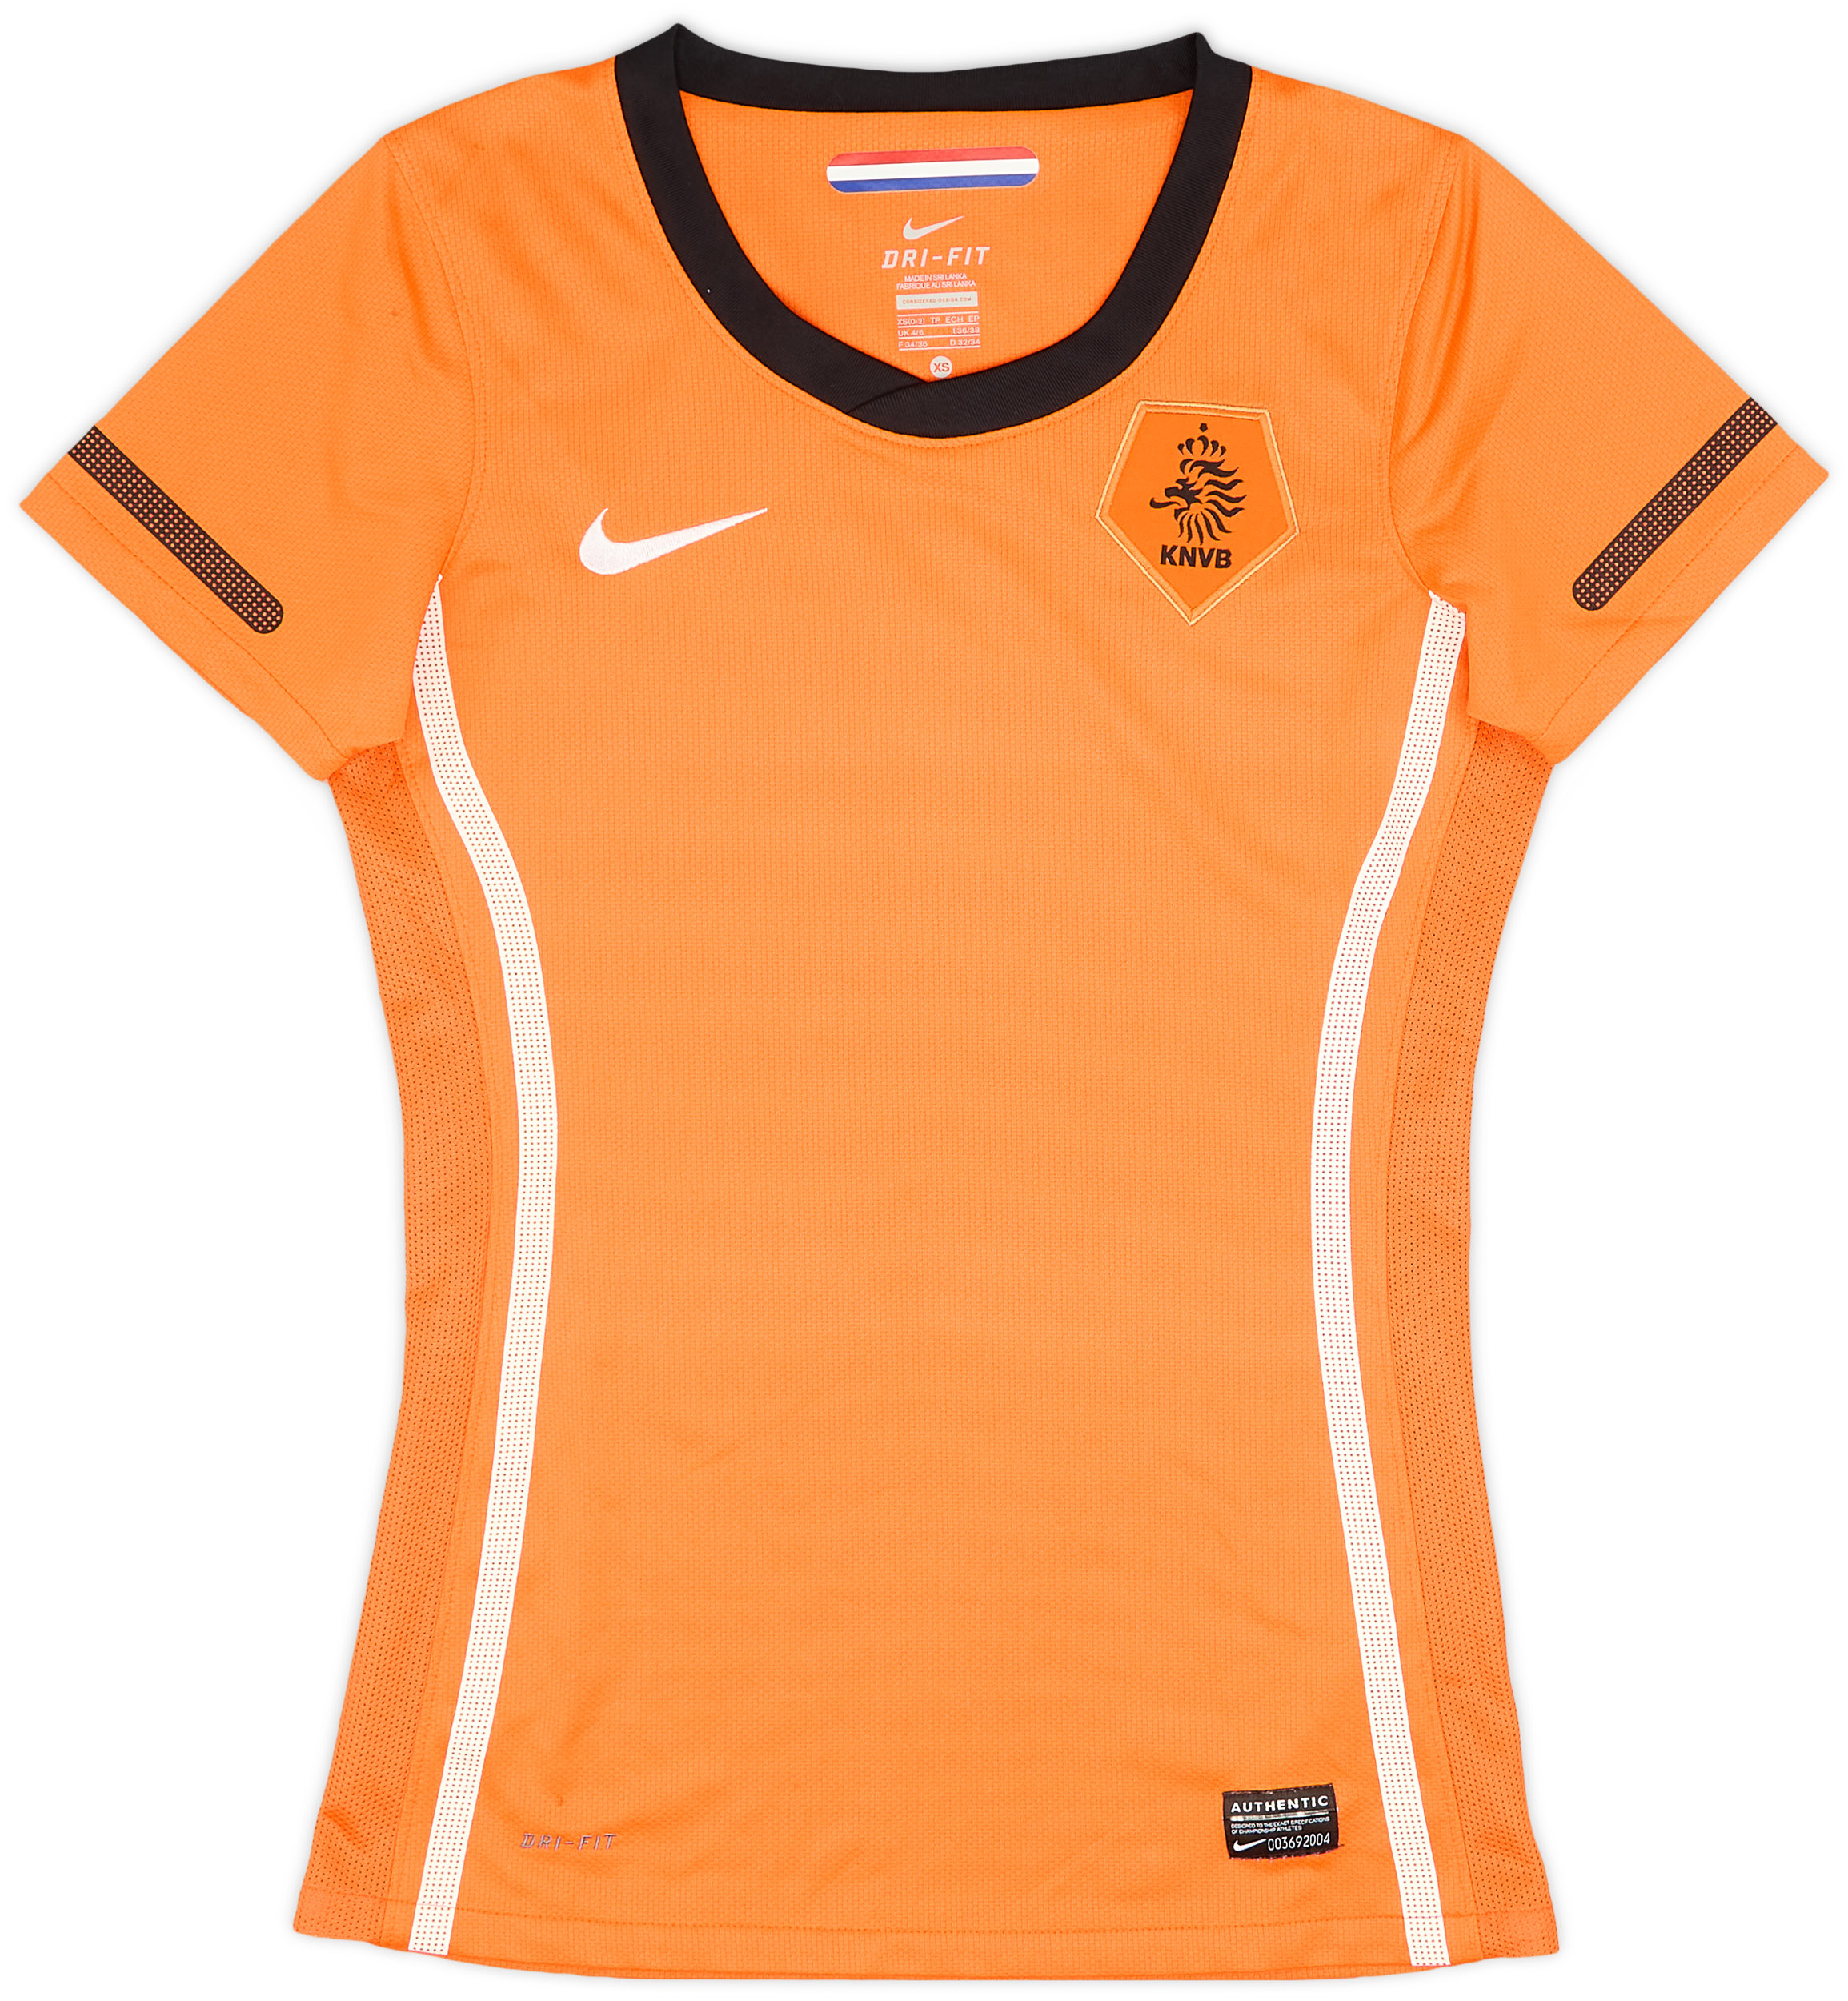 2010-11 Netherlands Home Shirt - 9/10 - (Women's )